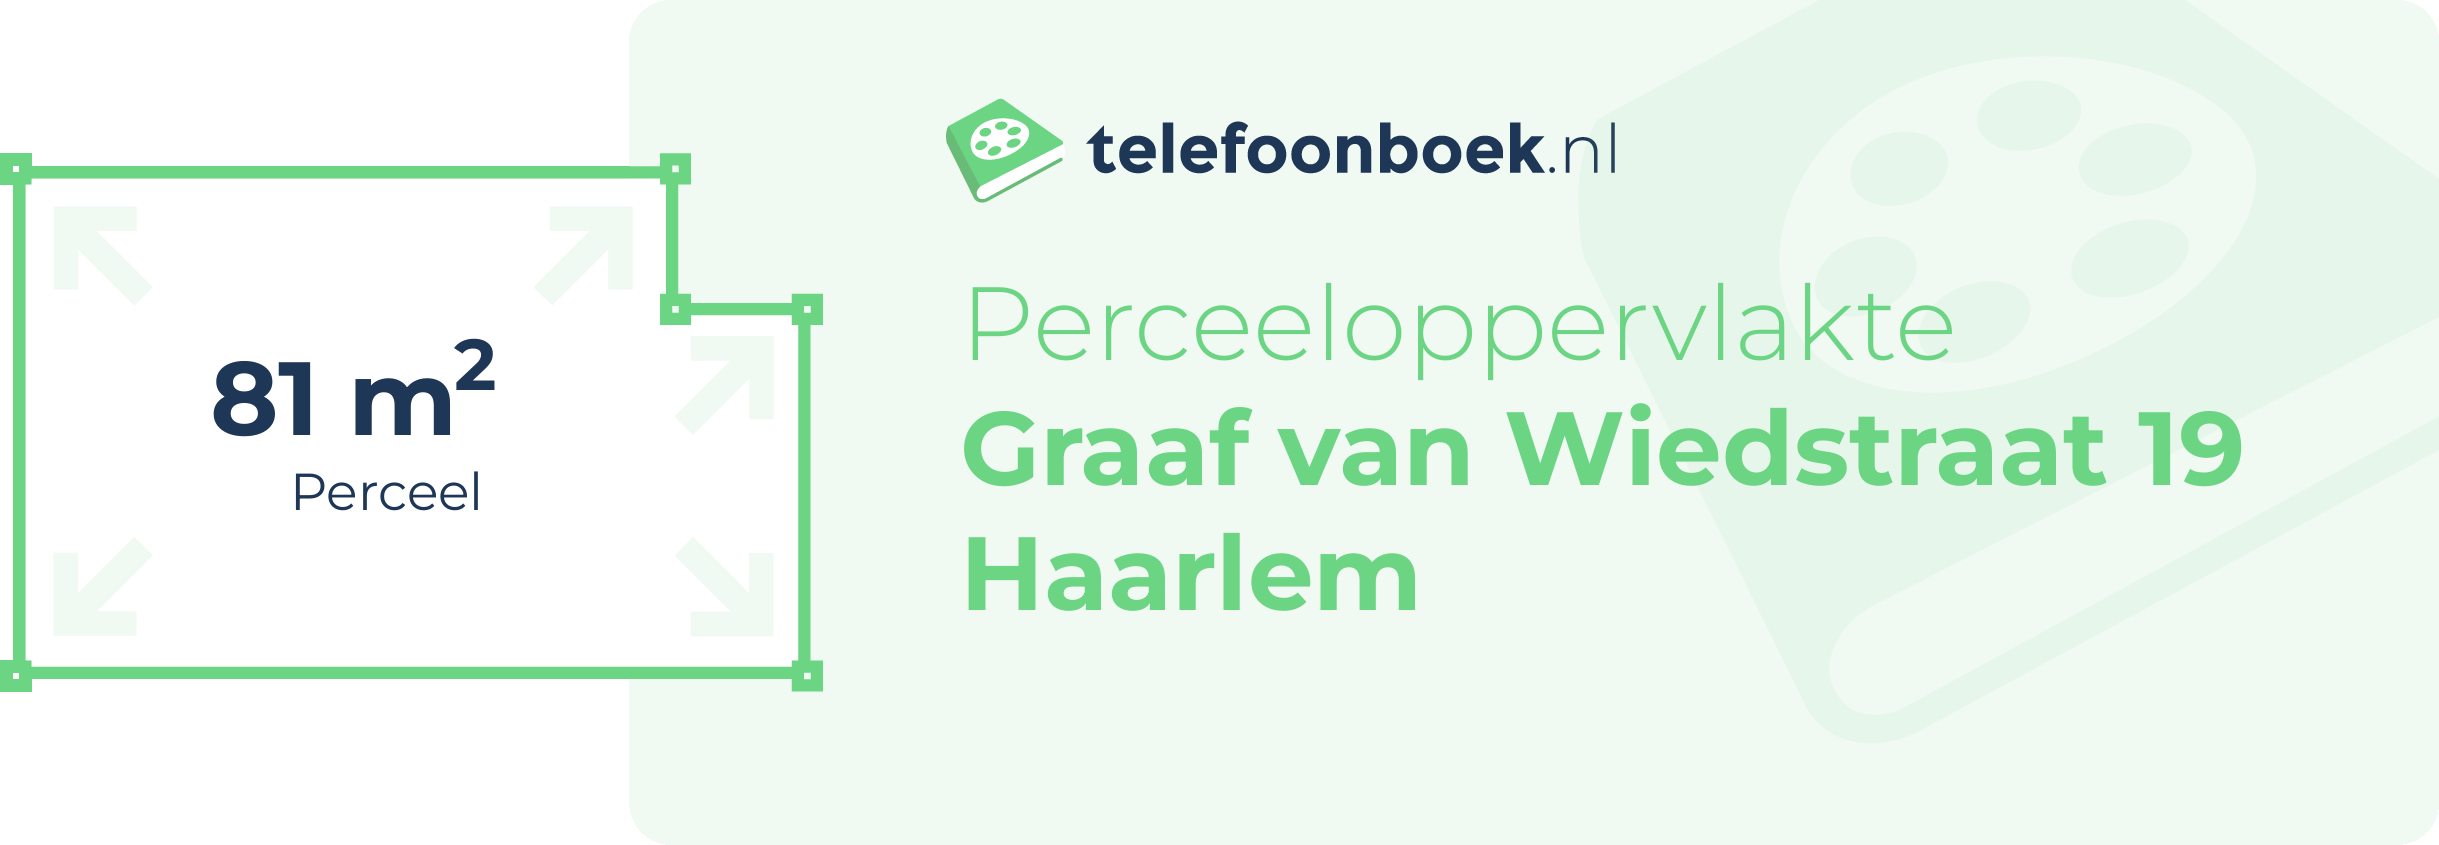 Perceeloppervlakte Graaf Van Wiedstraat 19 Haarlem